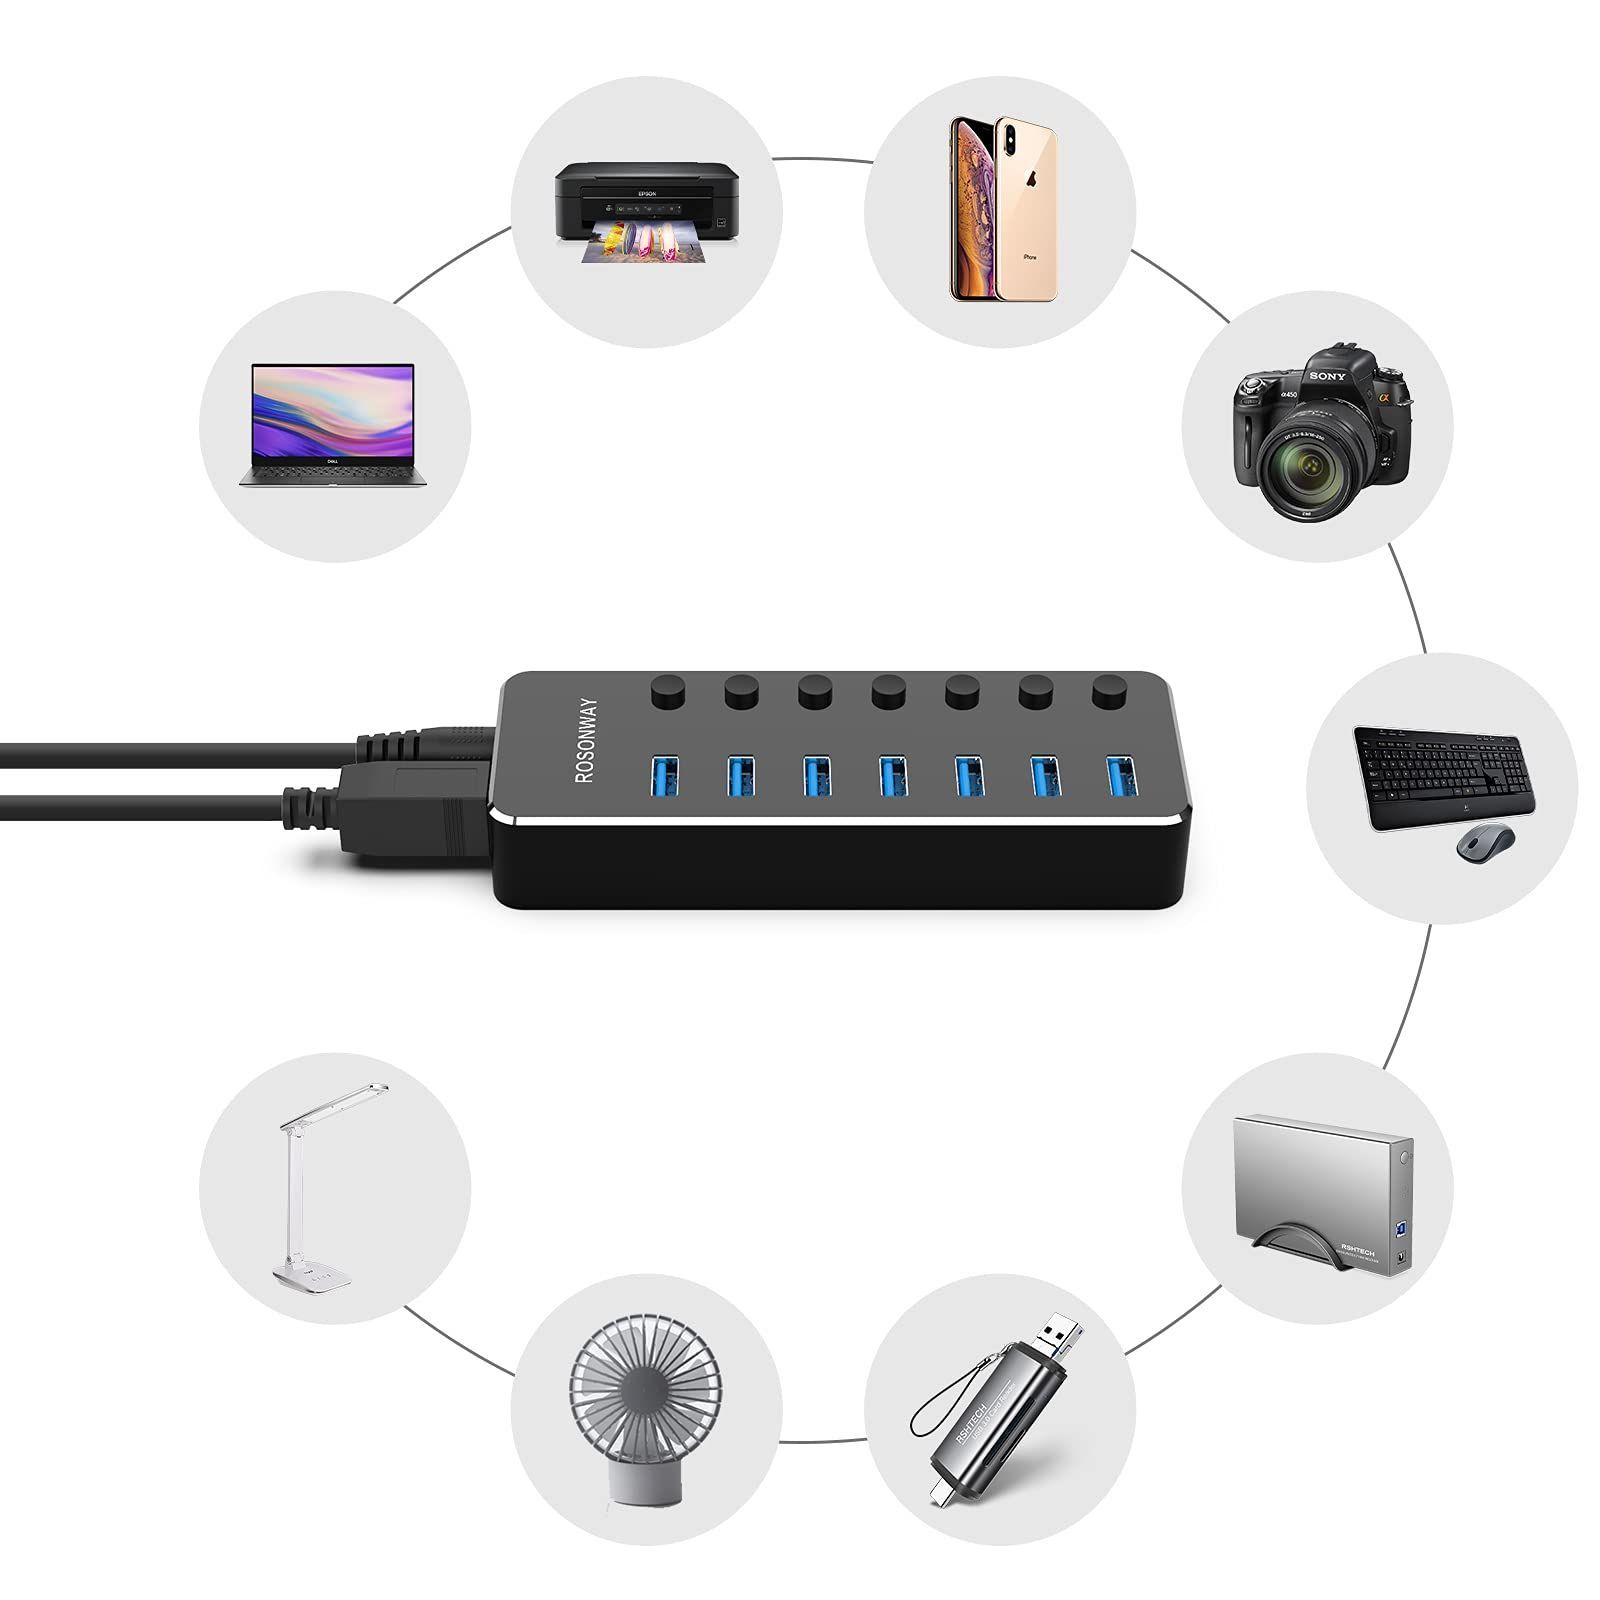 Elecife USB ハブ 8IN1 USB 3.0 Hub 7ポート  1USB C PD急速充電ポート 2022 改良 5Gbps高速